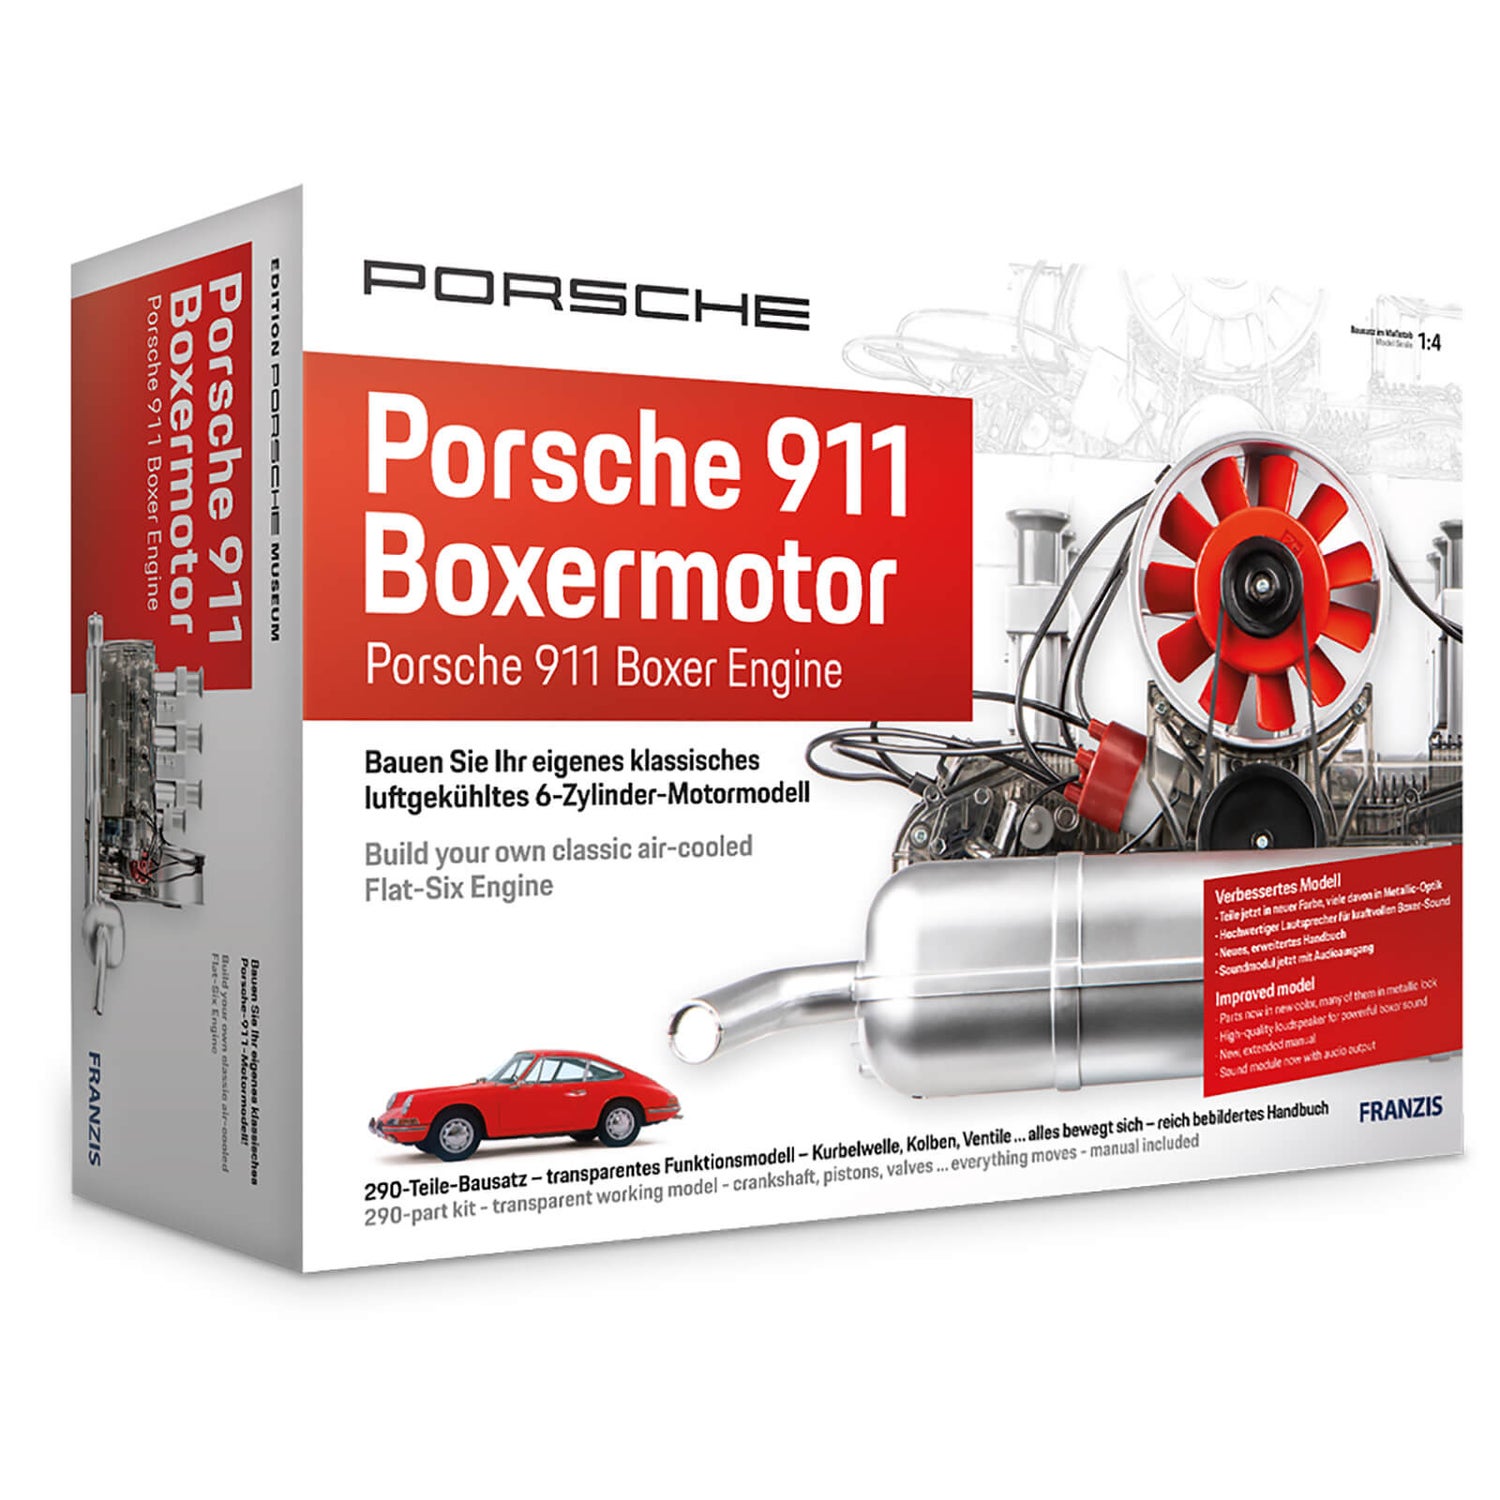 Franzis Official moteur Porsche 911 Boxer